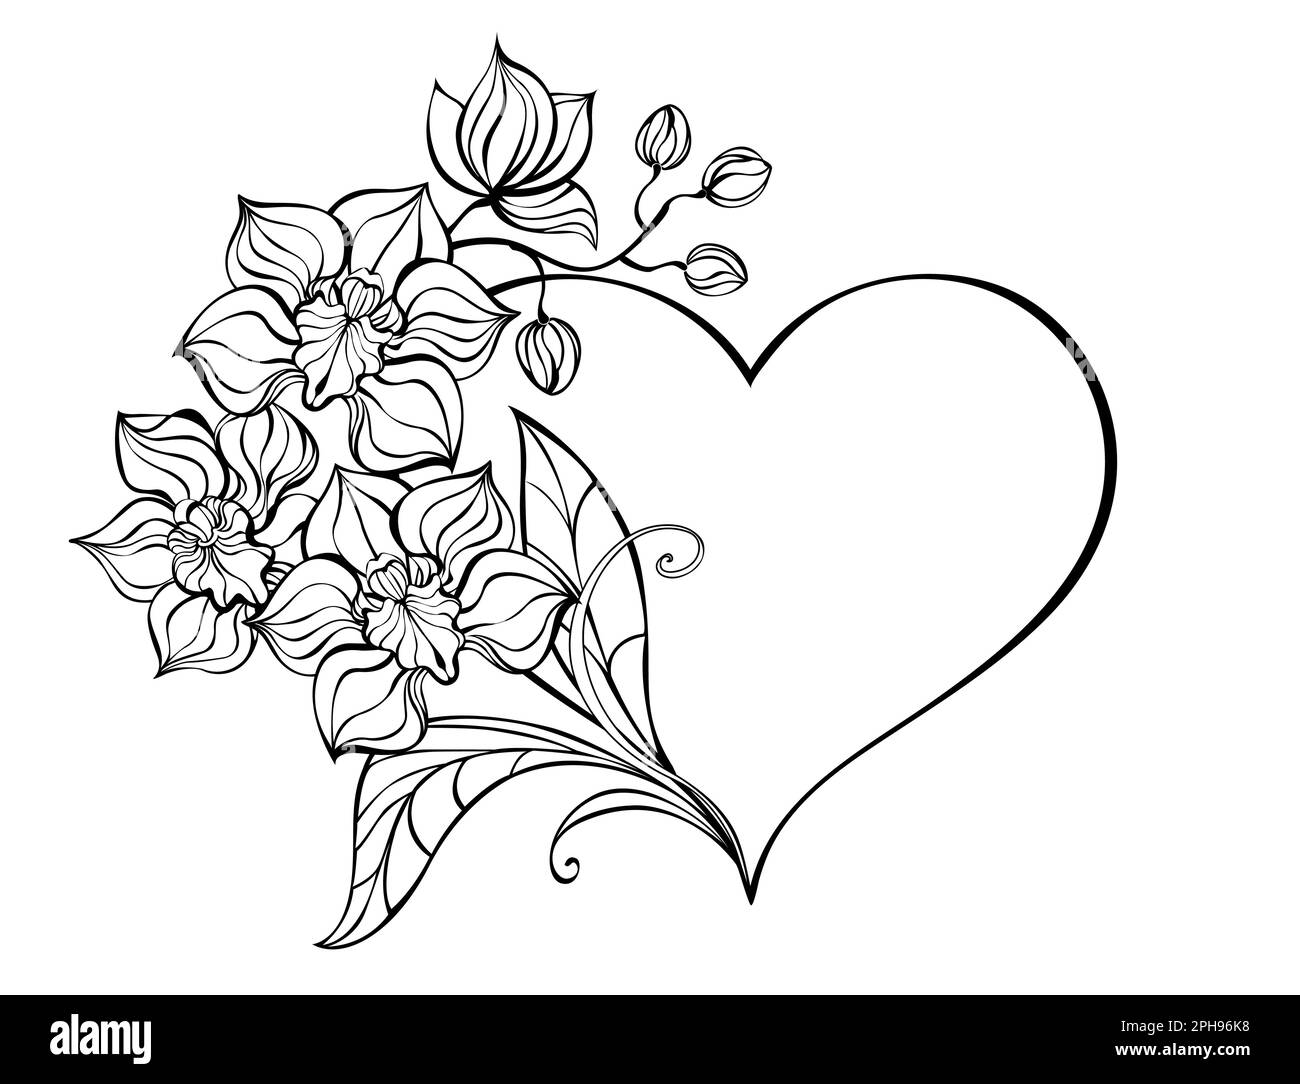 Cadre en forme de coeur, décoré de contours, branche artistiquement dessinée d'une orchidée sur fond blanc. Coloriage. Dessin artistique d'un orque Illustration de Vecteur